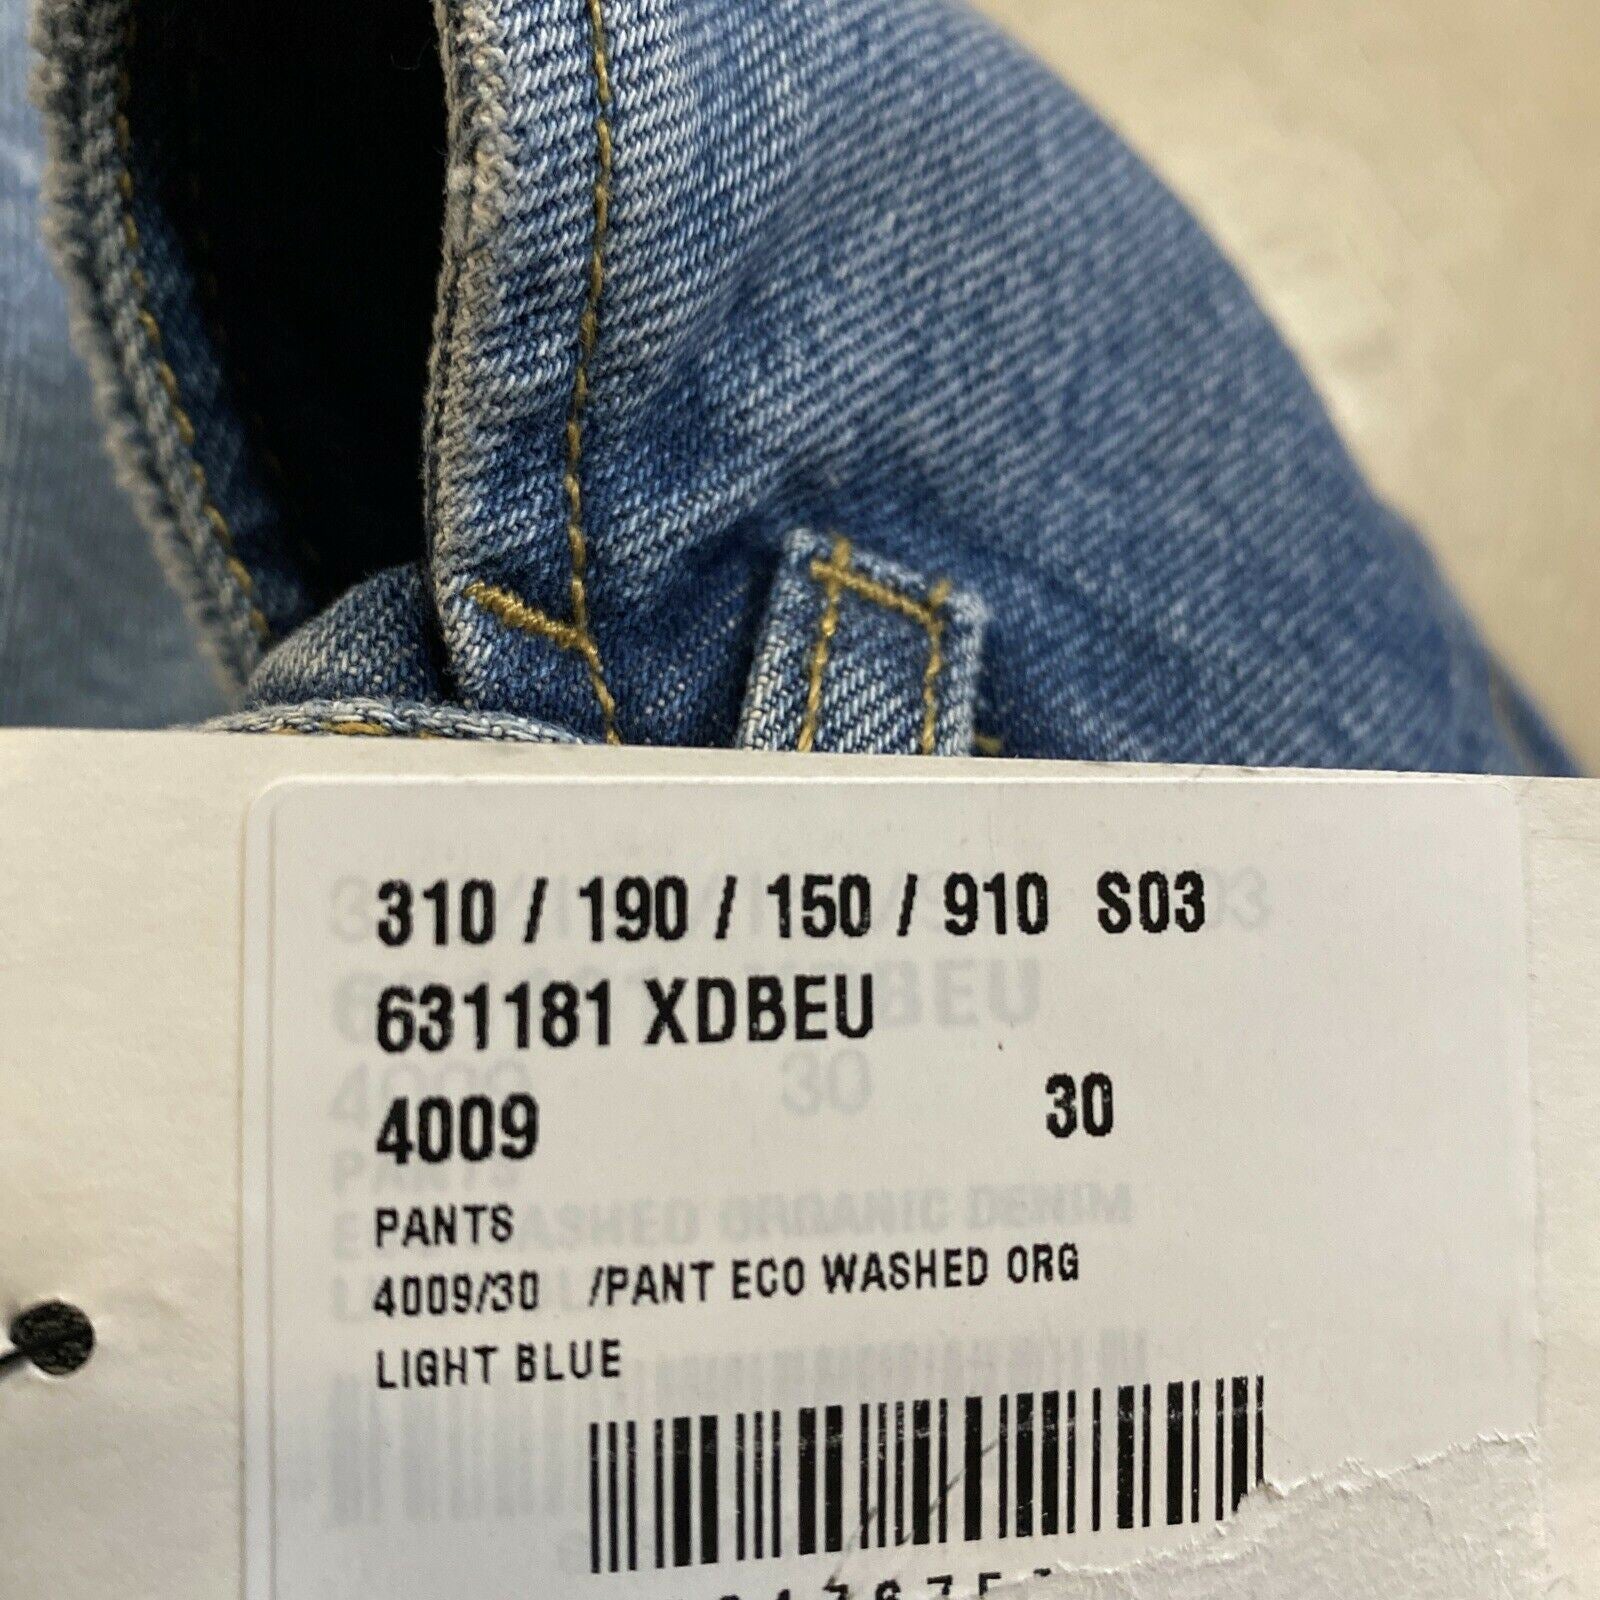 Neu mit Etikett: 1.500 $ Gucci kurze Jeanshose für Herren, blau, Größe 30 US/44 Eu